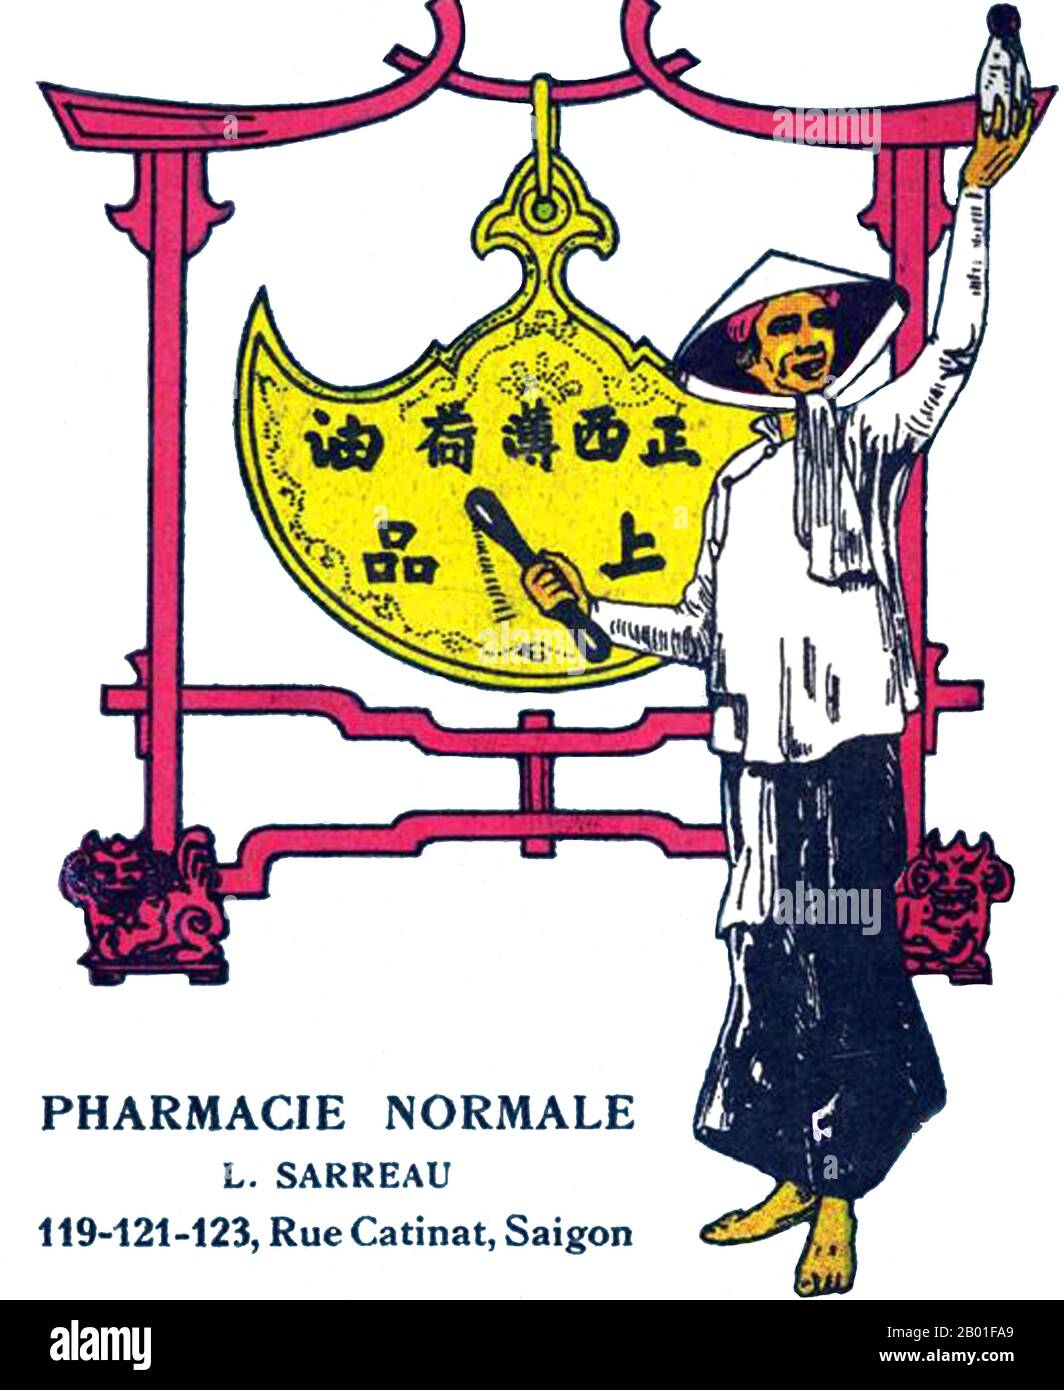 Vietnam: Werbung für L. Sarreau Pharmacy, Saigon c. 1940er. Werbung für L. Sarreau Pharmacie Normale, Rue Catinat, Saigon, aus der französischen Kolonialzeit in Indochina. Stockfoto